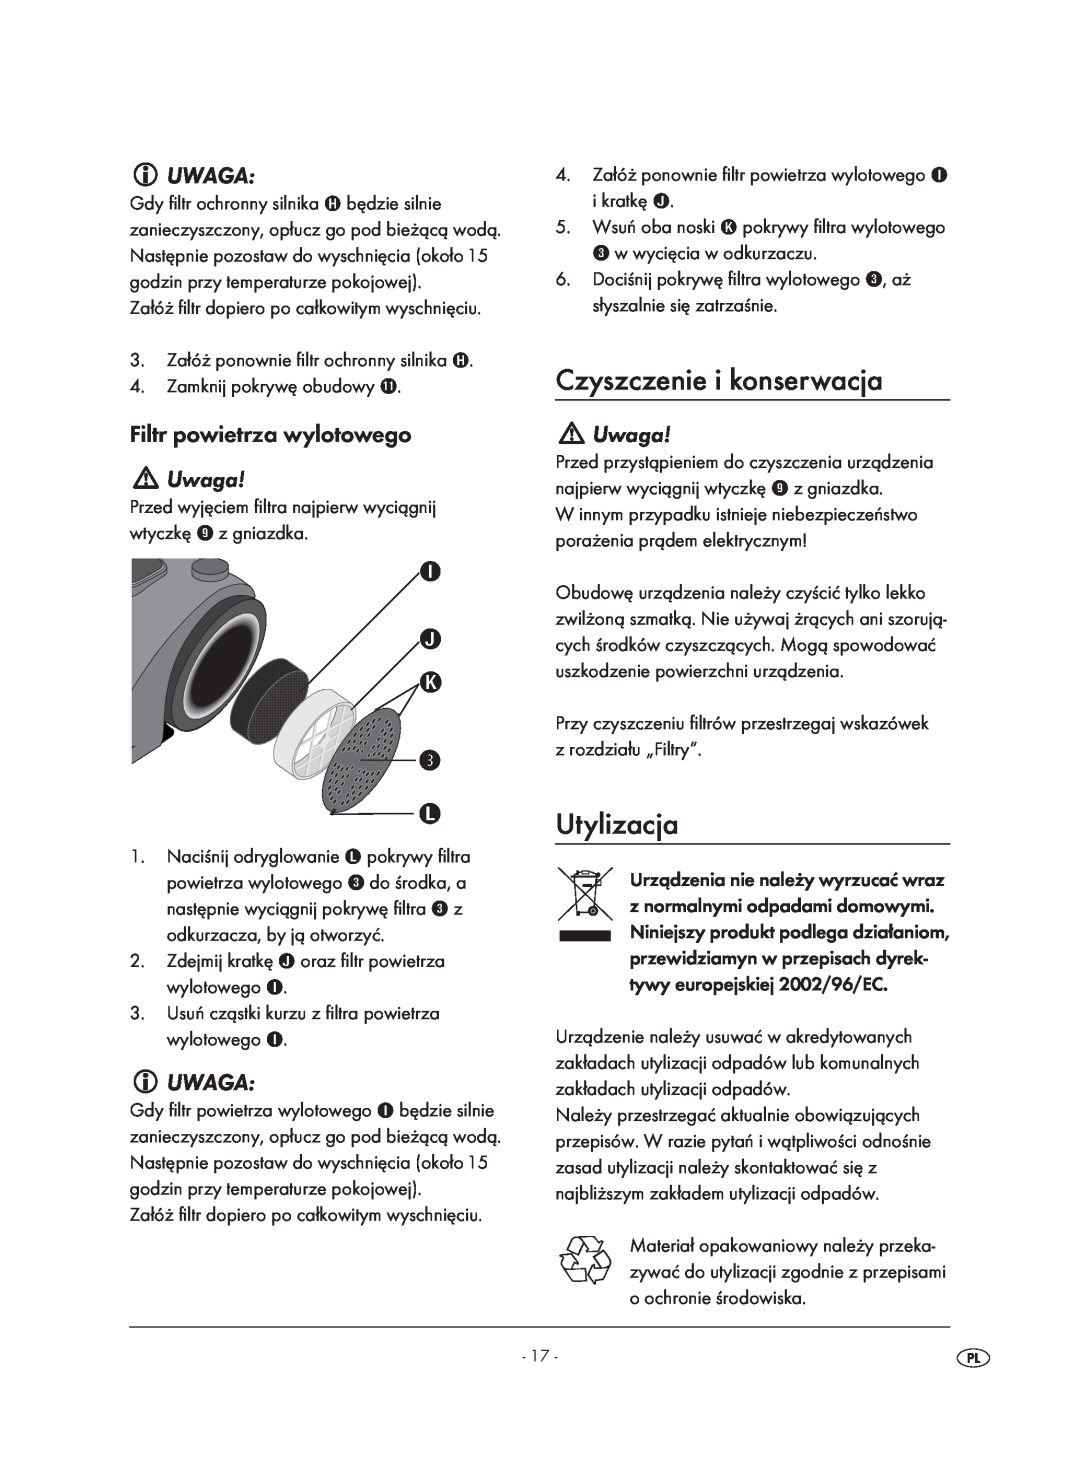 Kompernass KH 1410 operating instructions Czyszczenie i konserwacja, Utylizacja, Uwaga, Filtr powietrza wylotowego 